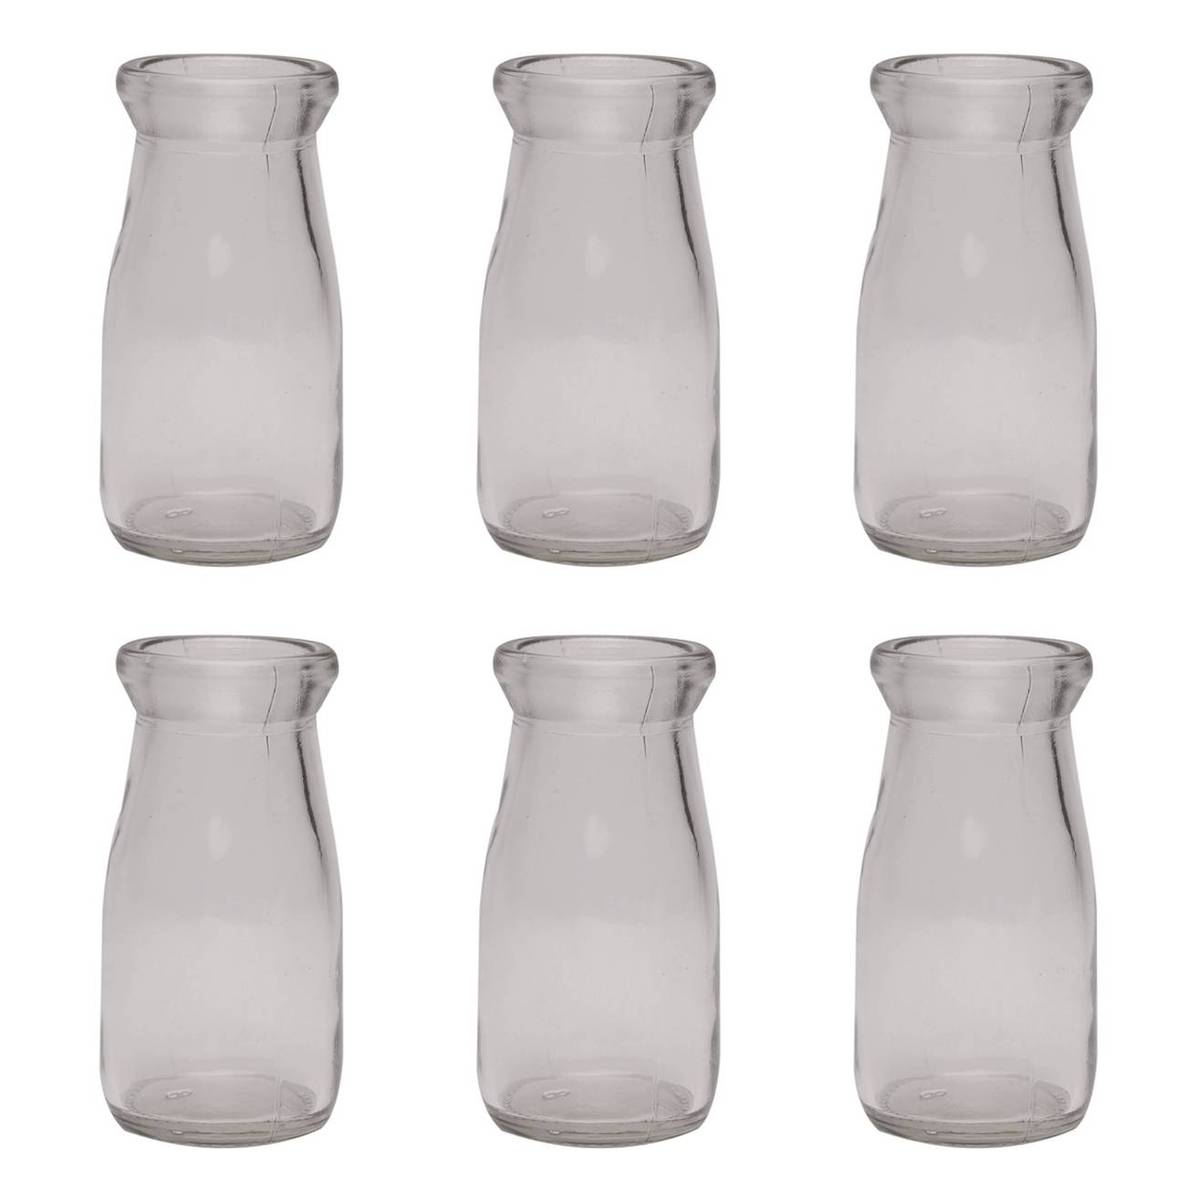 Buy Glass Milk Bottle 100ml 6 Pack for GBP 5.50 | Hobbycraft UK